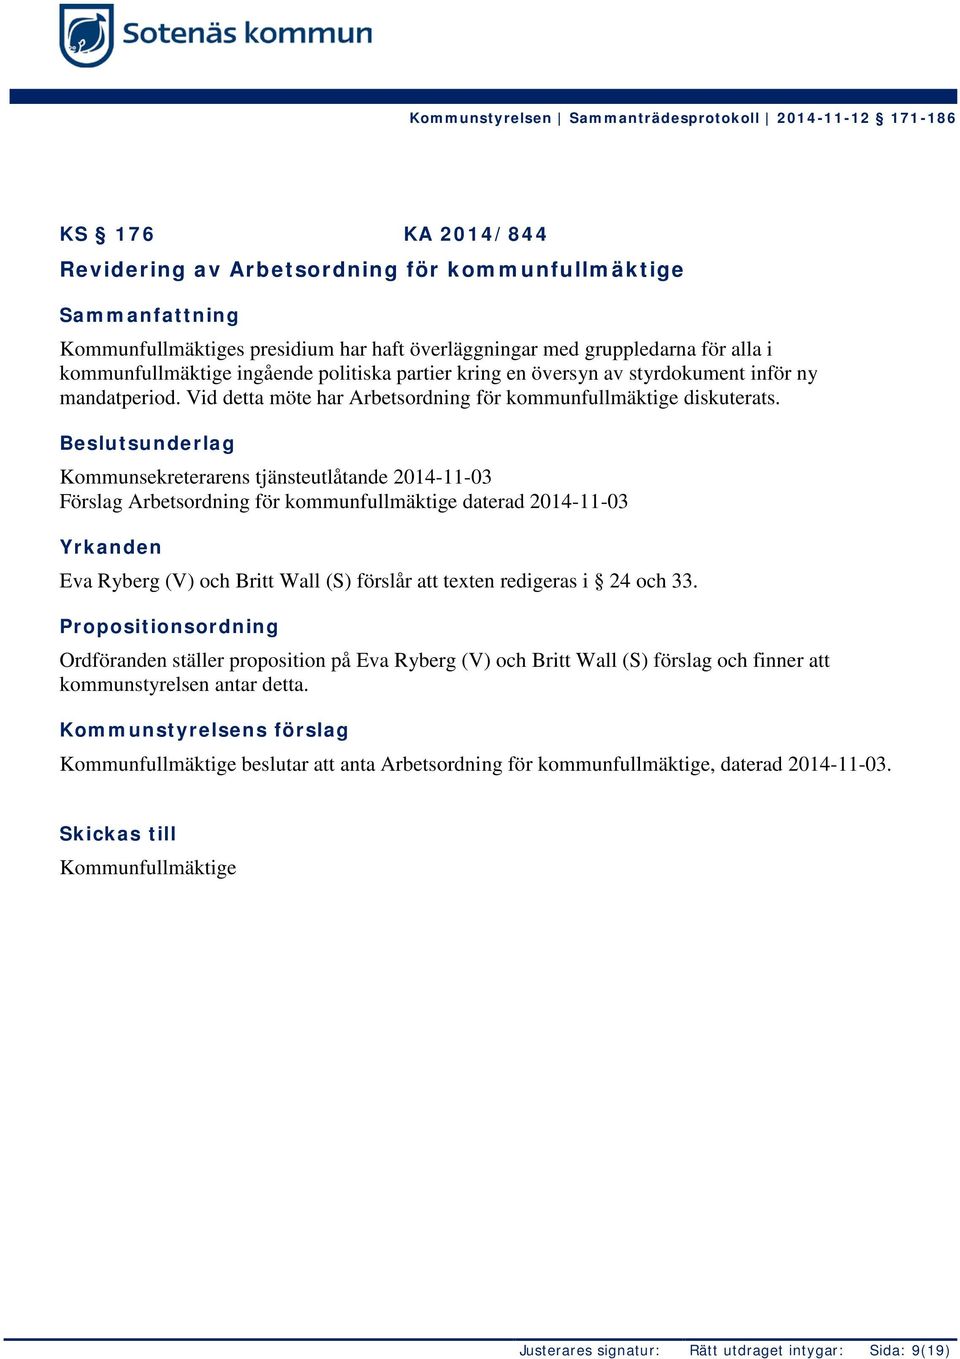 Beslutsunderlag Kommunsekreterarens tjänsteutlåtande 2014-11-03 Förslag Arbetsordning för kommunfullmäktige daterad 2014-11-03 Yrkanden Eva Ryberg (V) och Britt Wall (S) förslår att texten redigeras